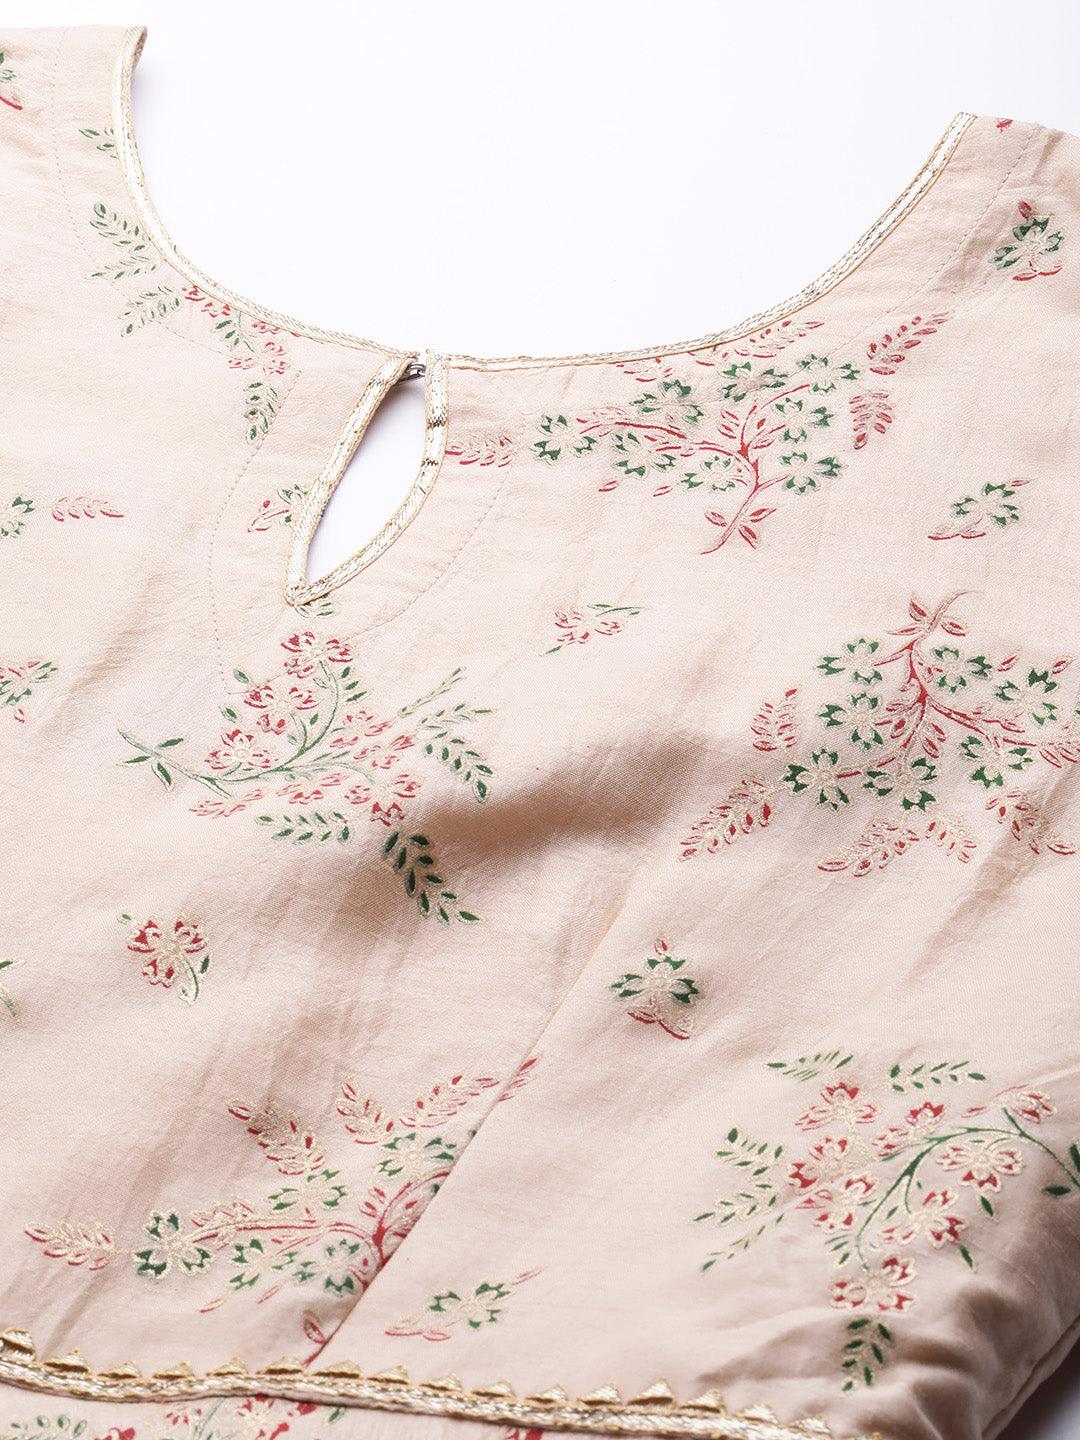 Peach Printed Silk Blend Dress With Dupatta - Libas